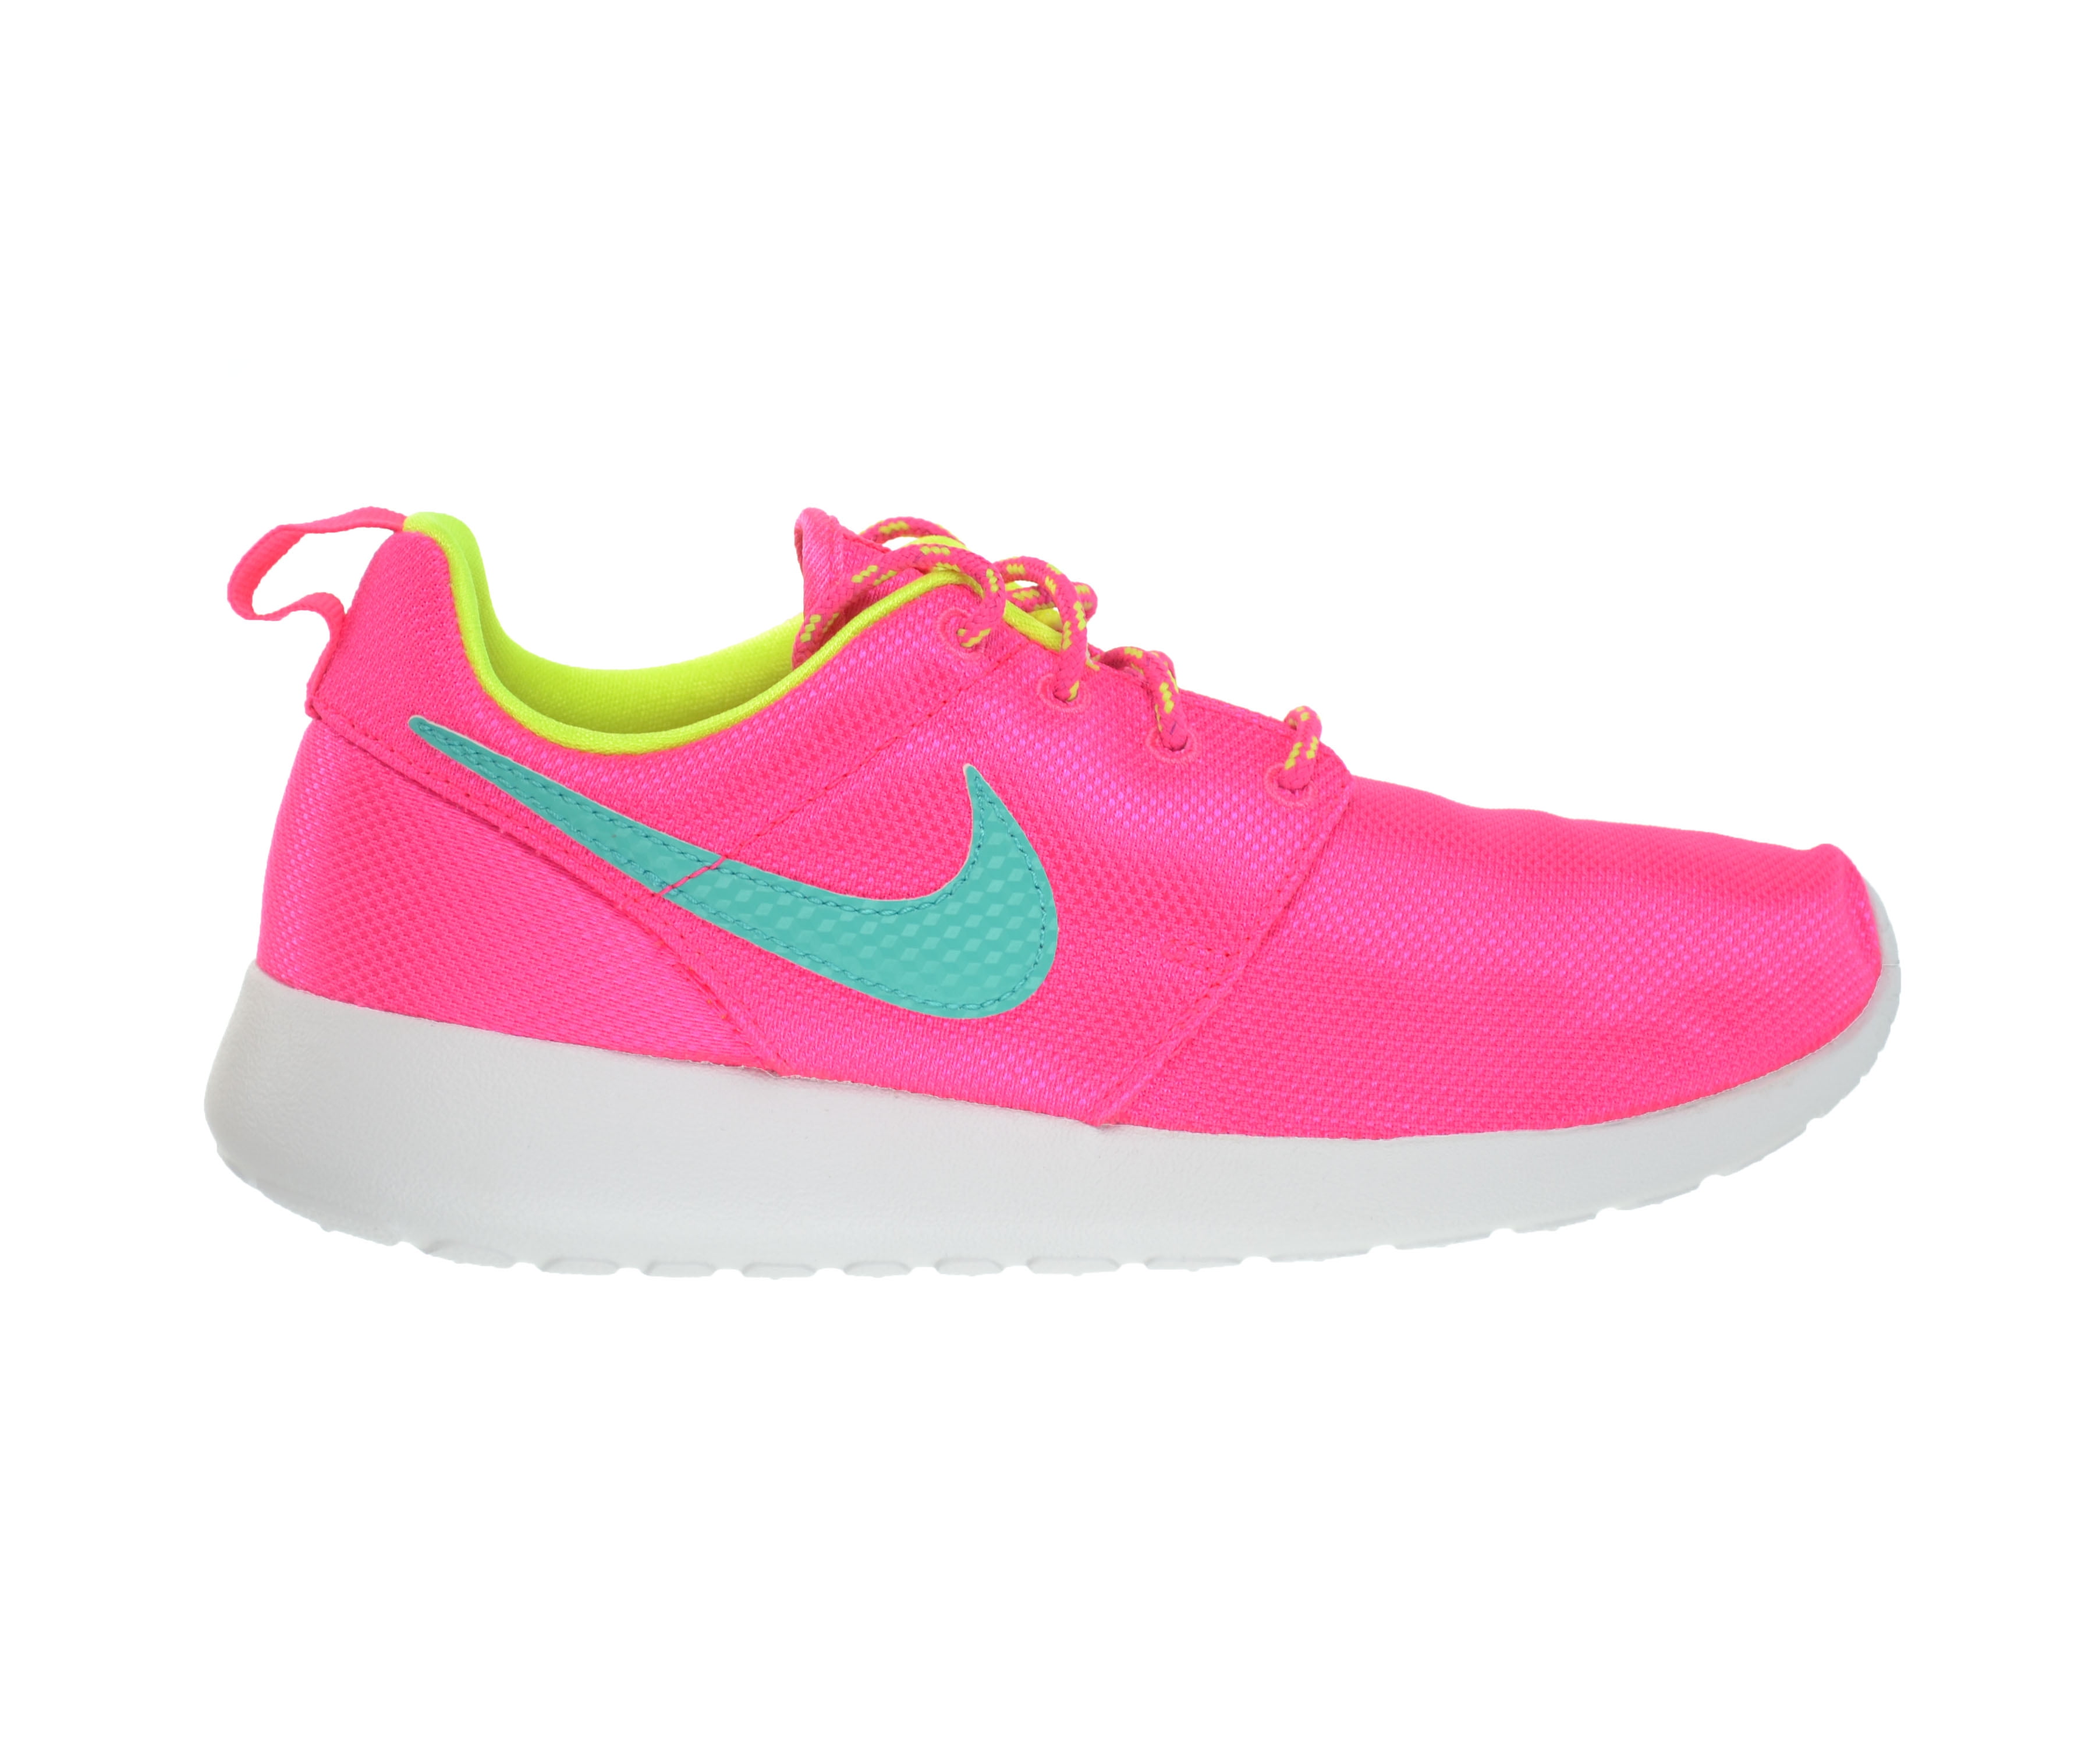 Nike Roshe One (GS) "Hyper Pink Jade" 599729 605 Big Kid's Sneakers - Walmart.com